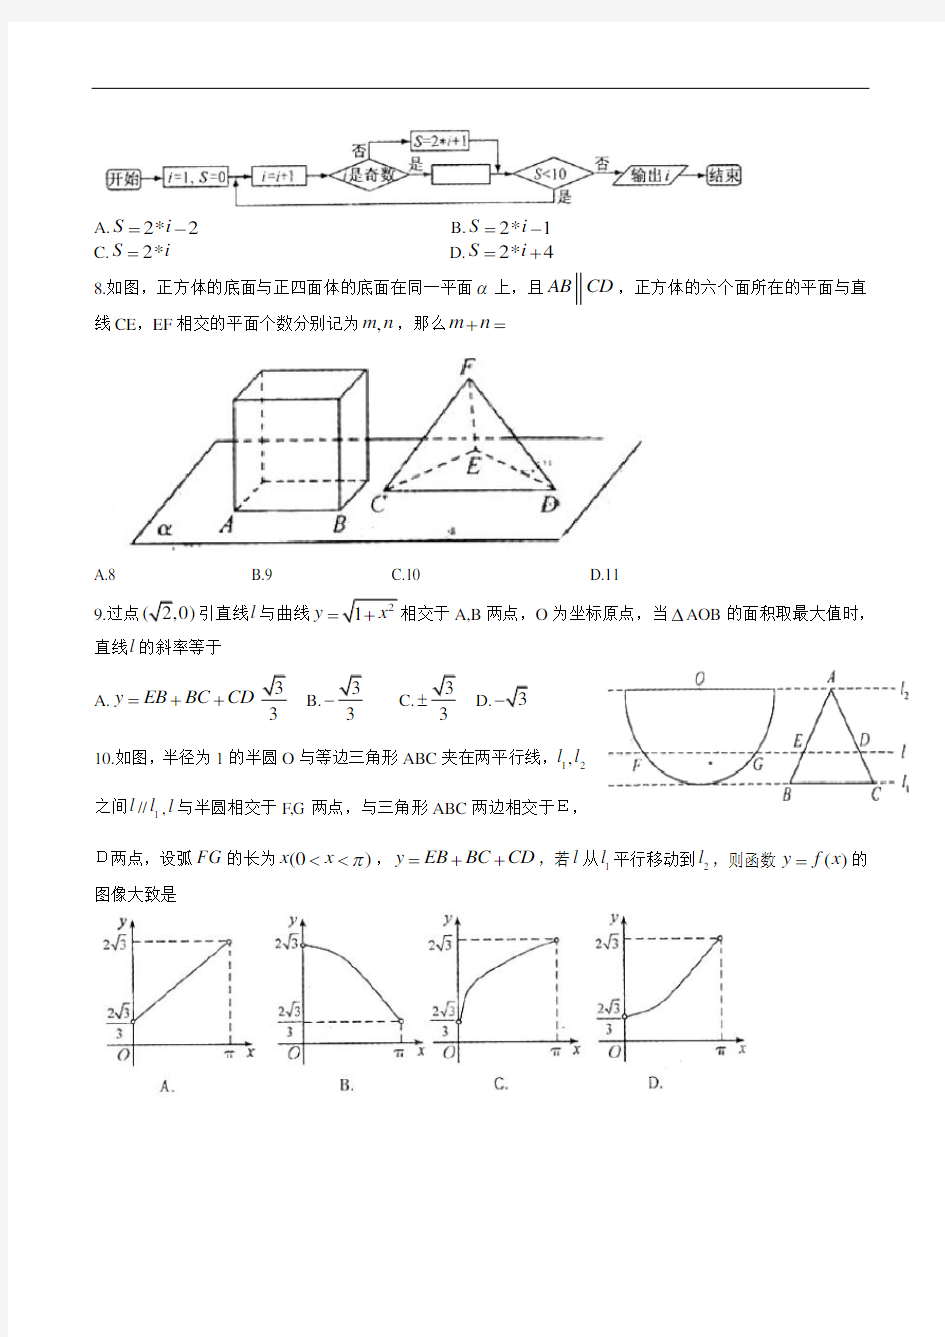 2013年高考真题——理科数学 (江西卷)  解析版